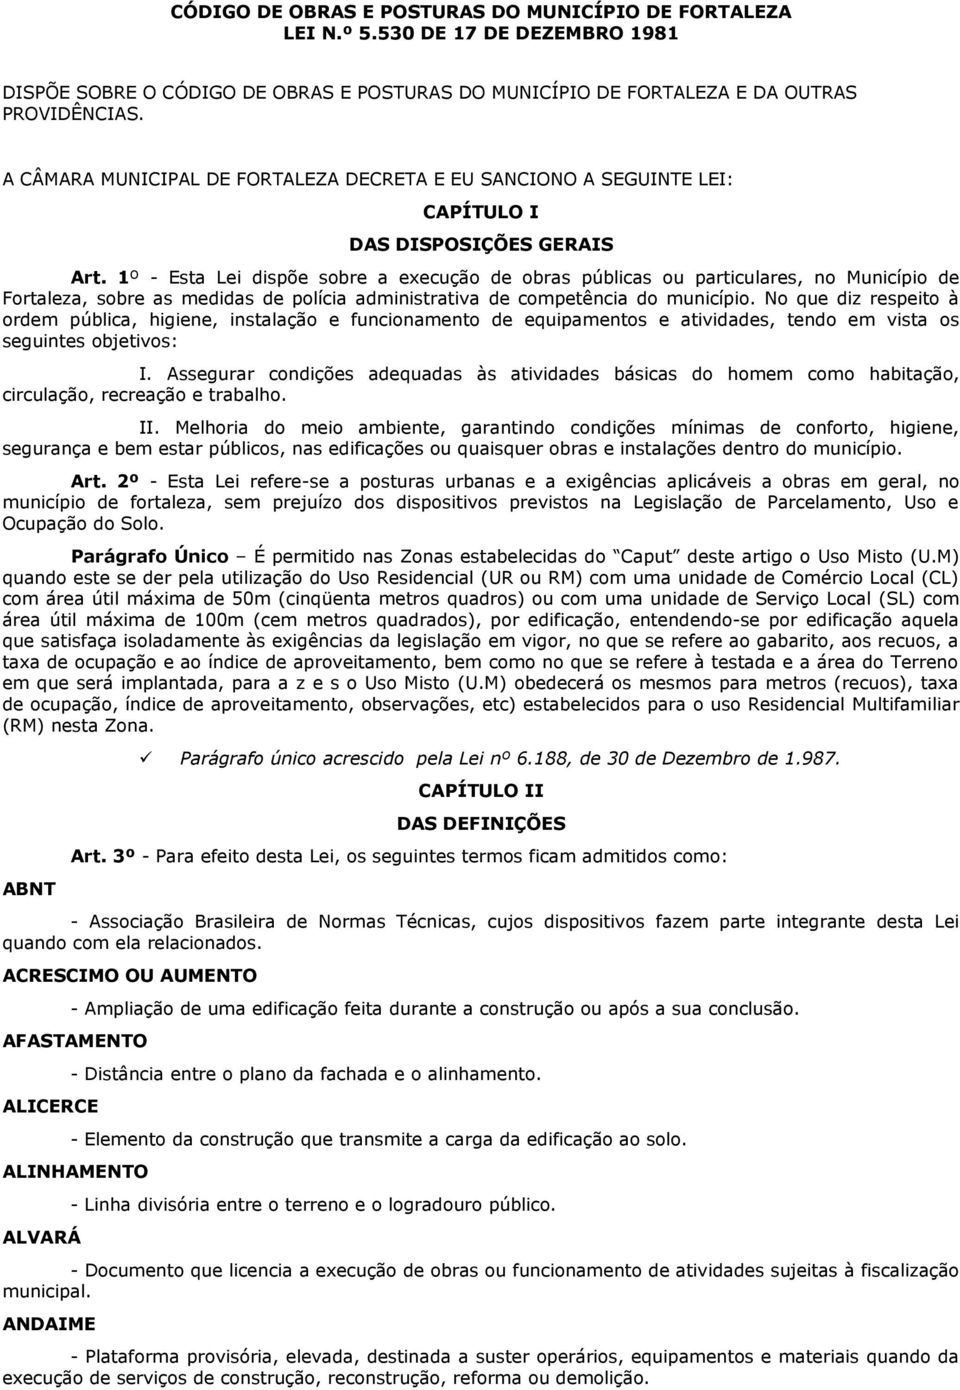 1º - Esta Lei dispõe sobre a execução de obras públicas ou particulares, no Município de Fortaleza, sobre as medidas de polícia administrativa de competência do município.